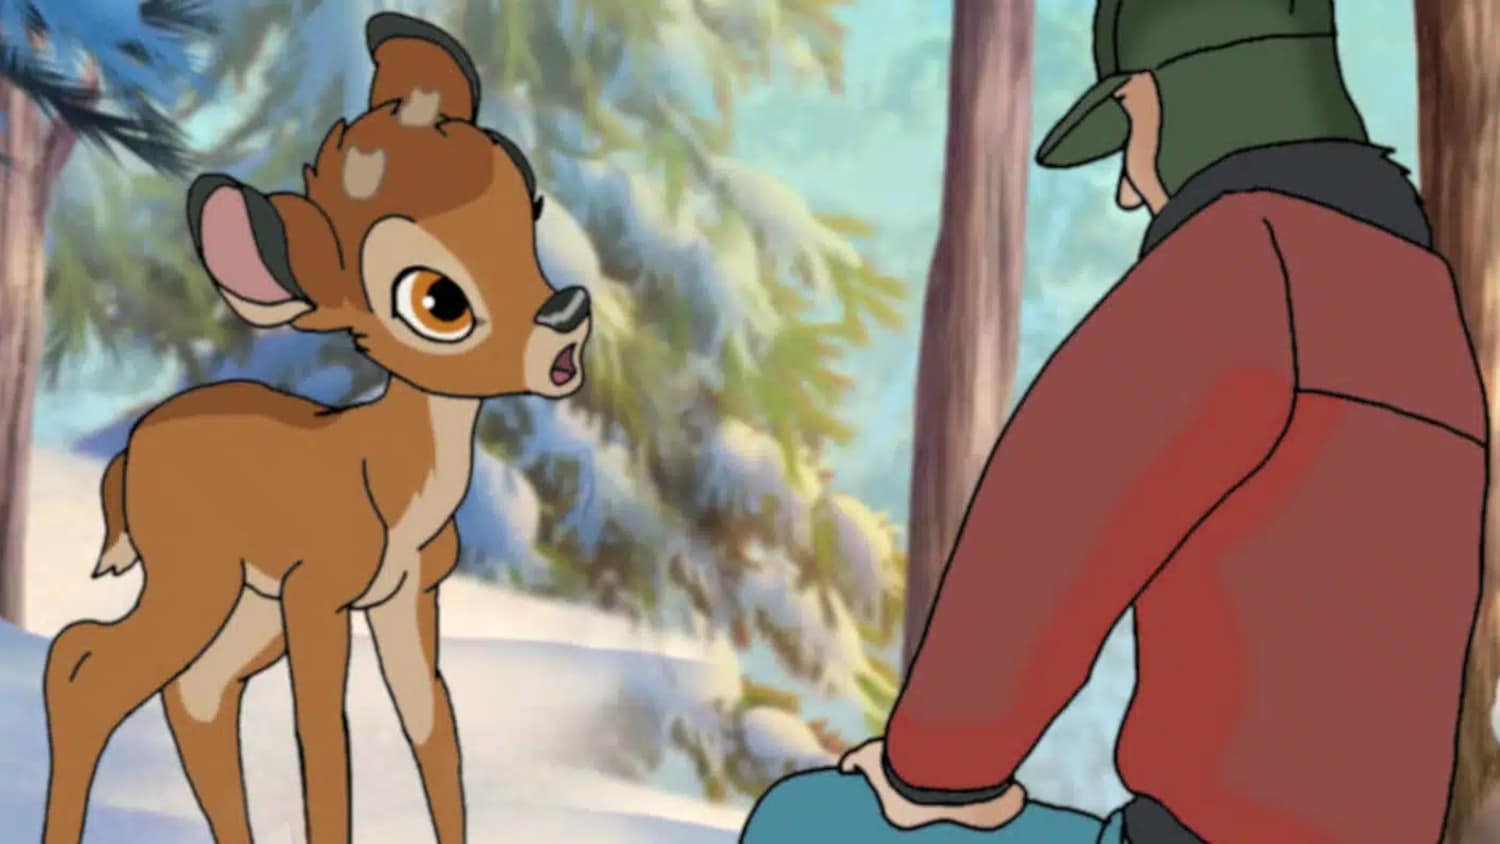 bambi live action canceled disney